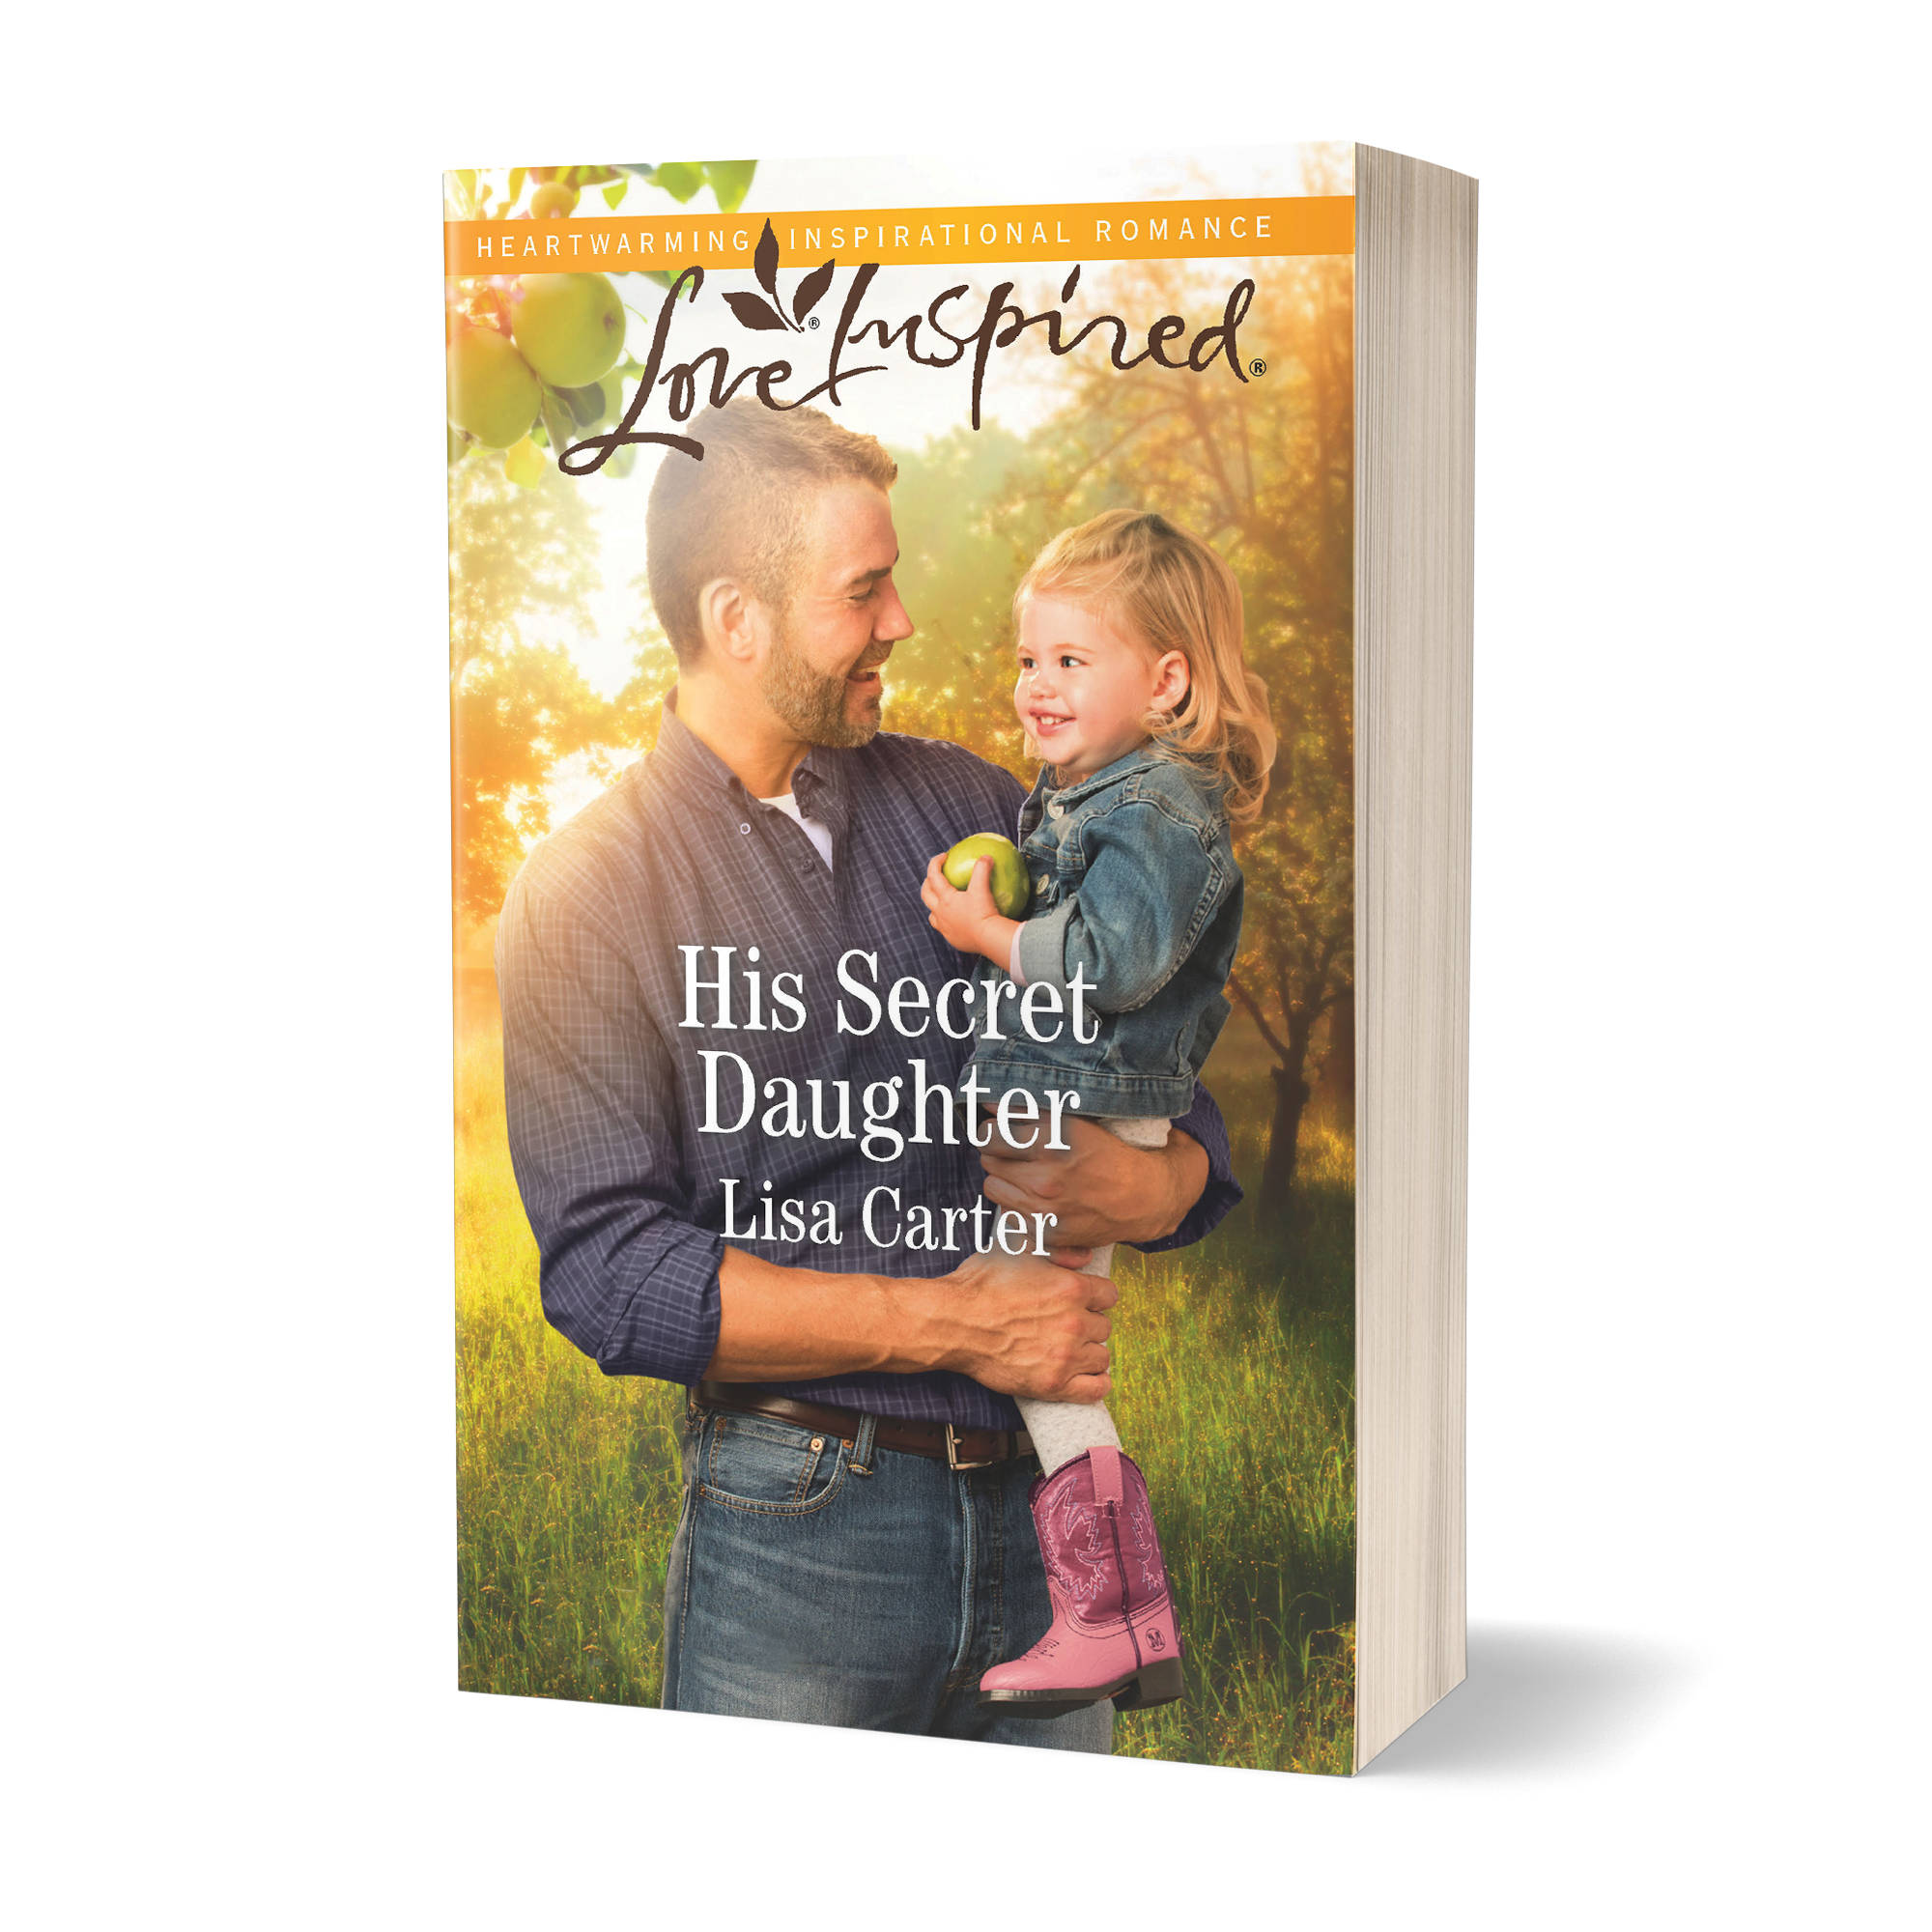  His Secret Daughter - Lisa Carter 